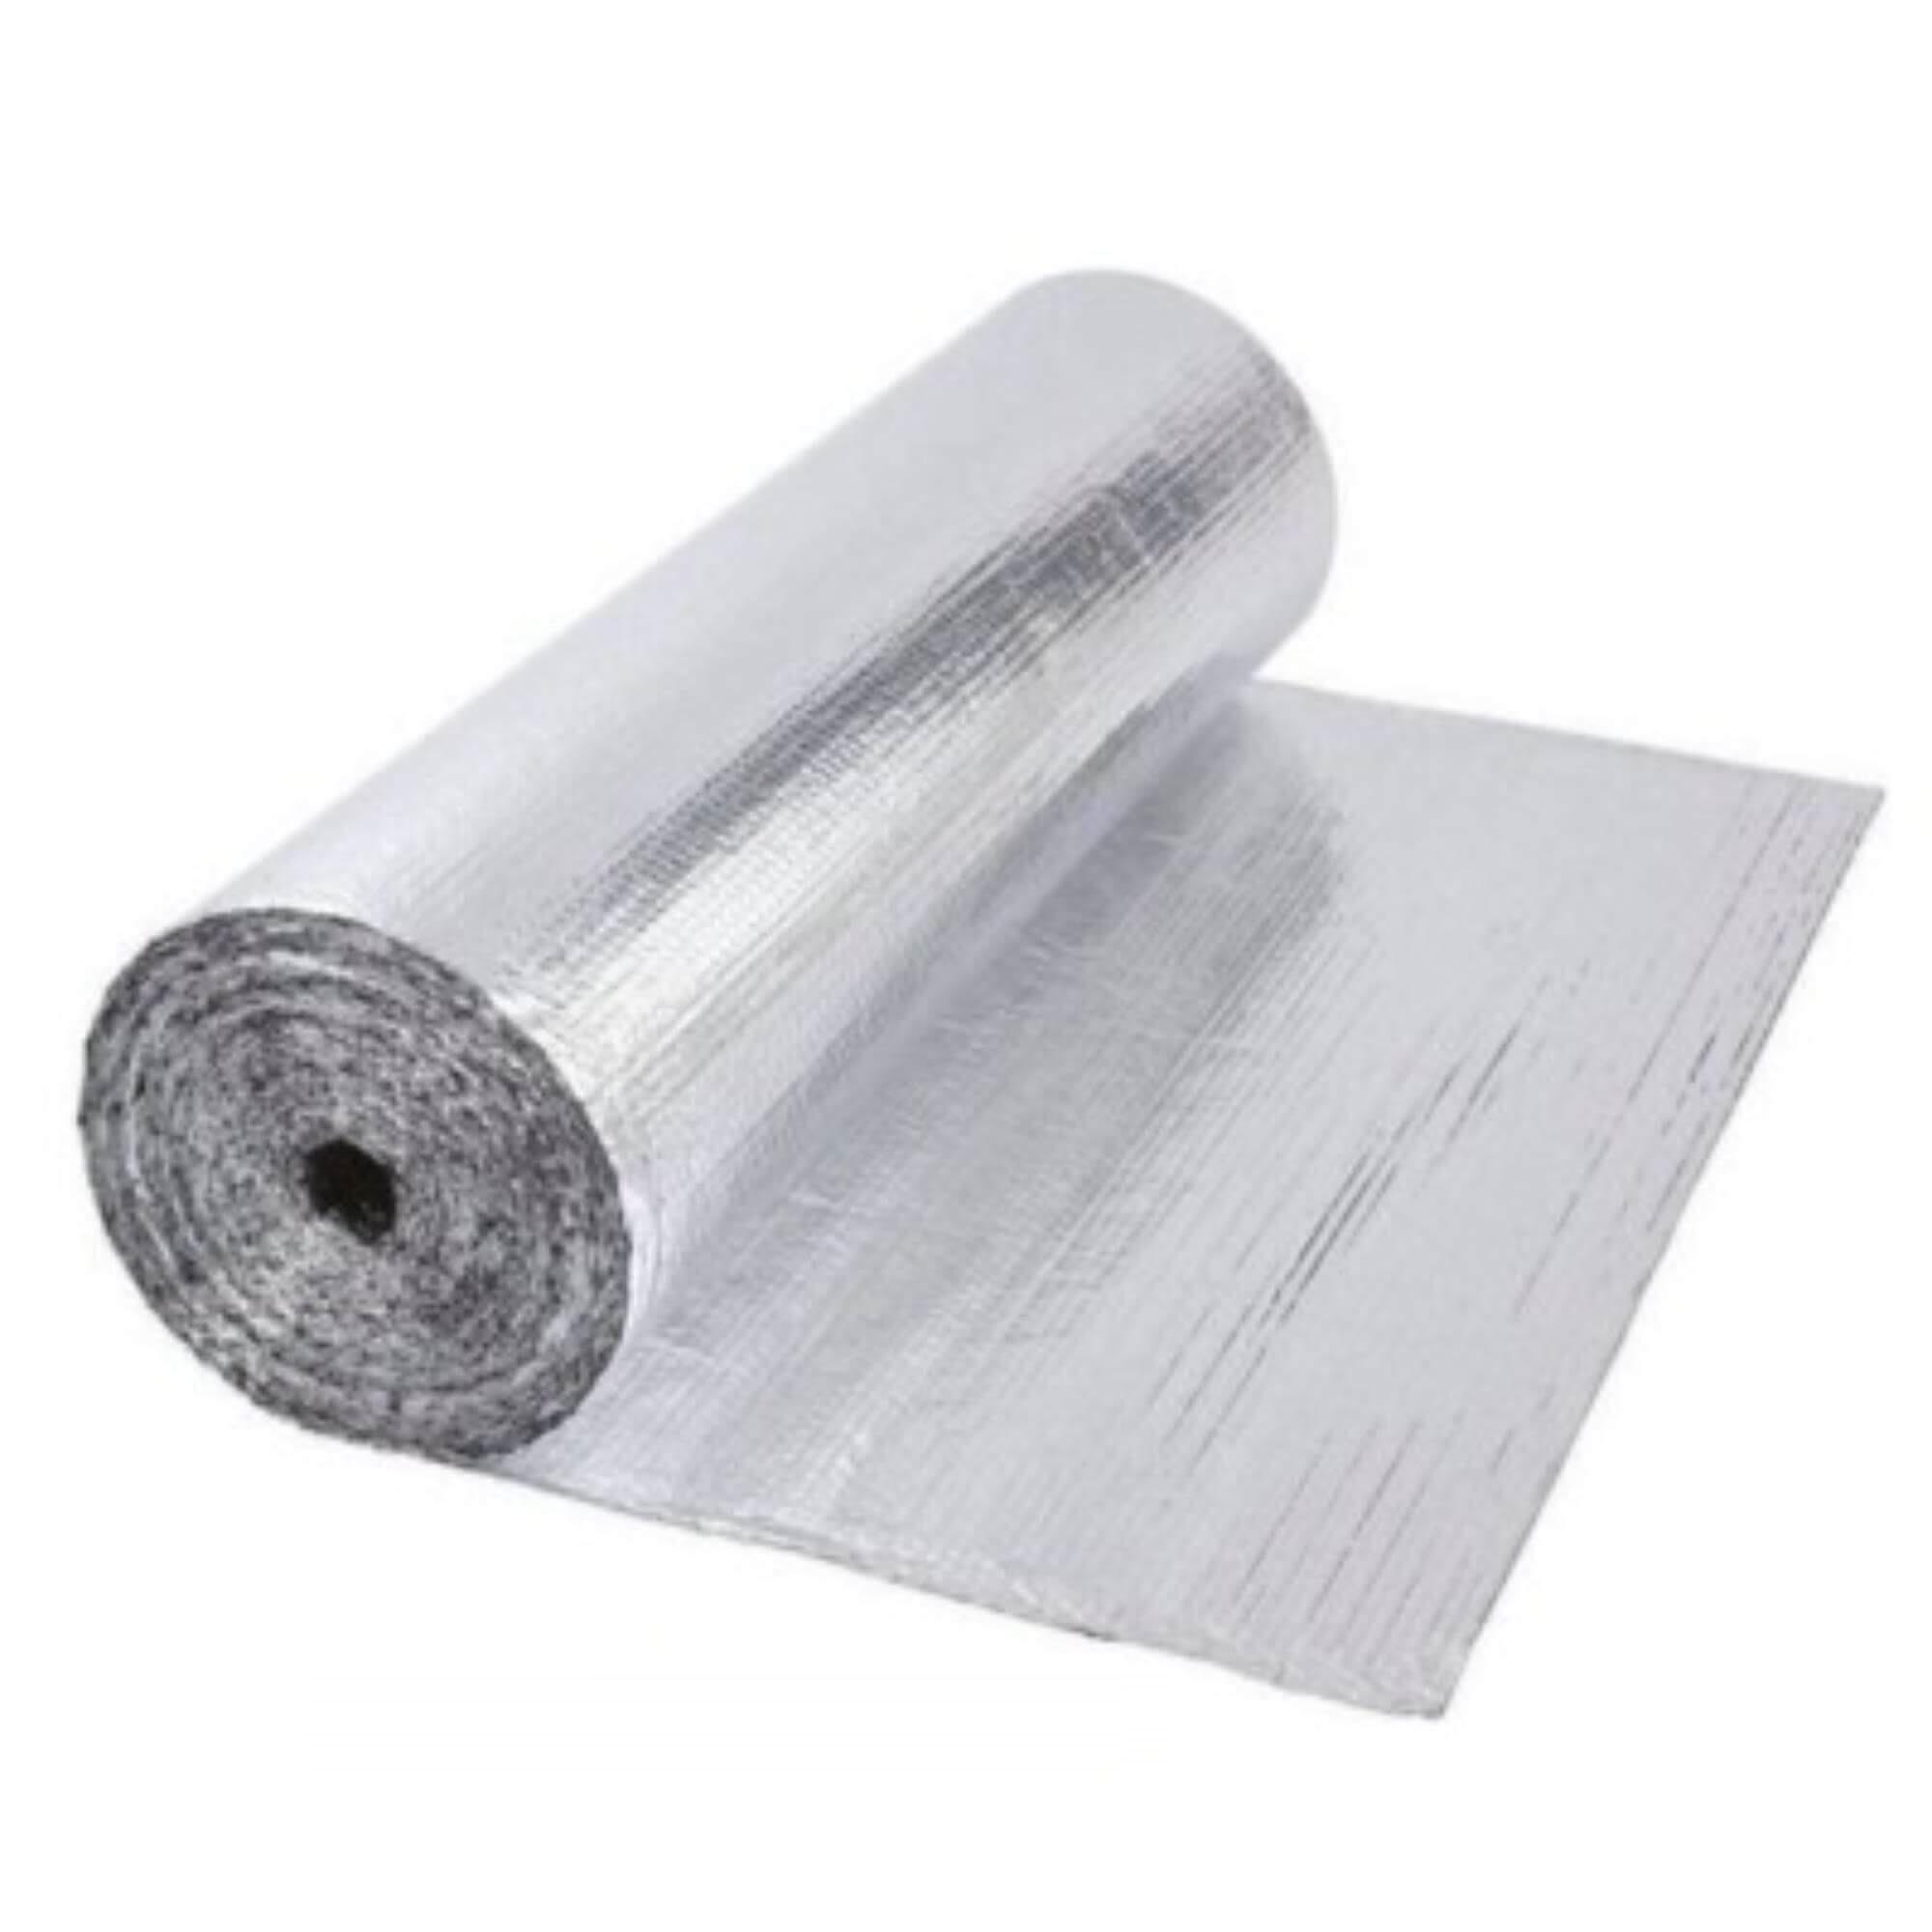 radiatorfolie aluminium 2,5 m x 50 cm x 2 mm